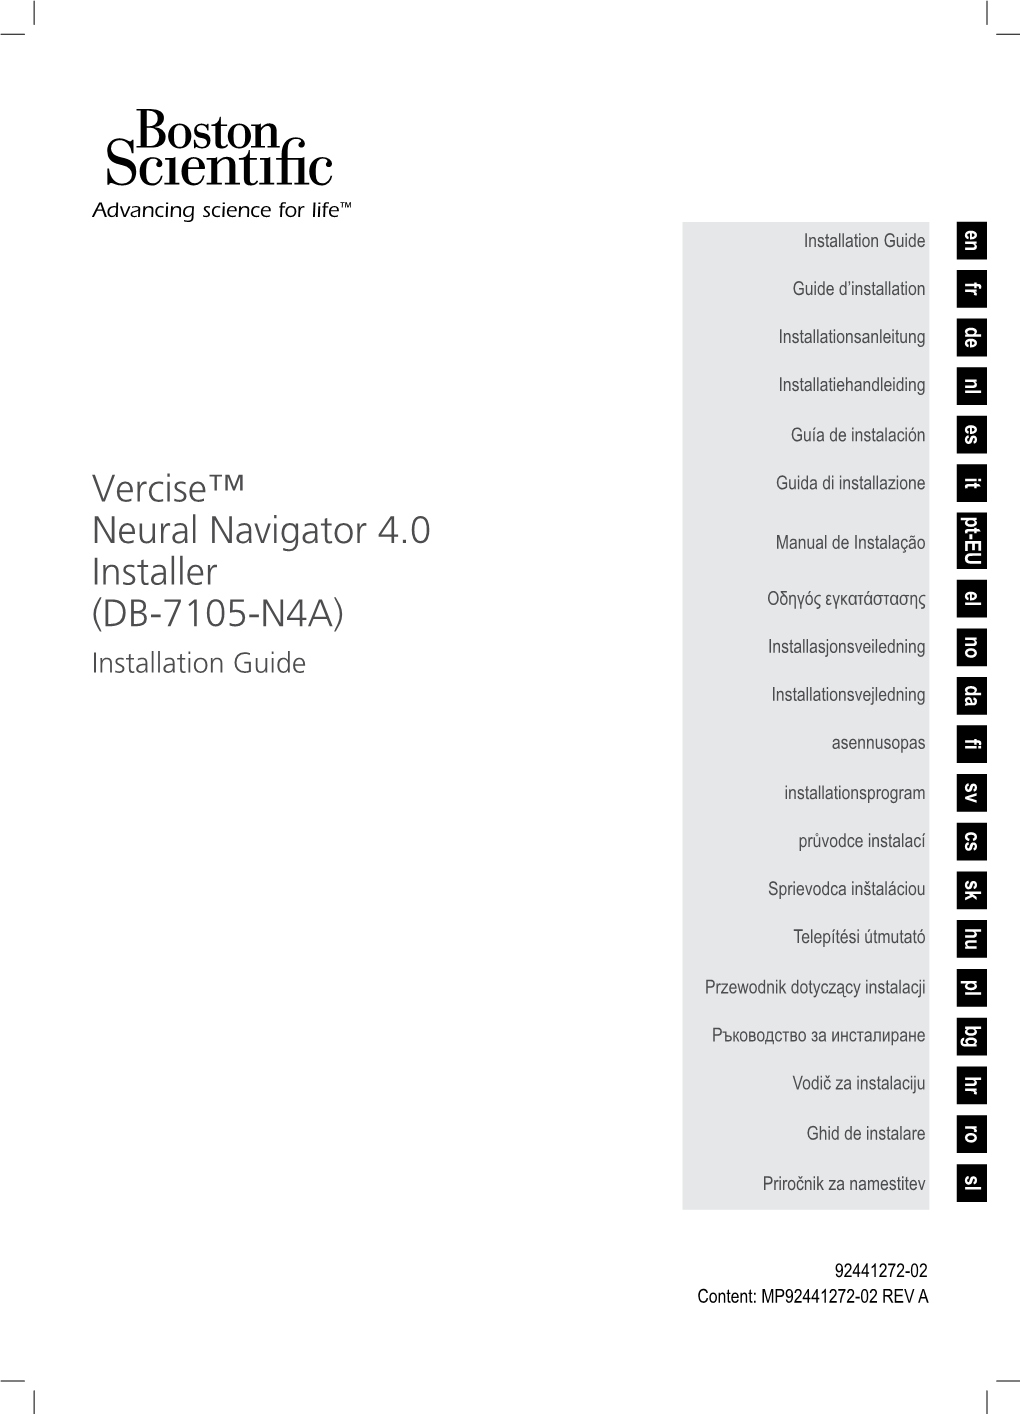 Vercise™ Neural Navigator 4.0 Installer (DB-7105-N4A)